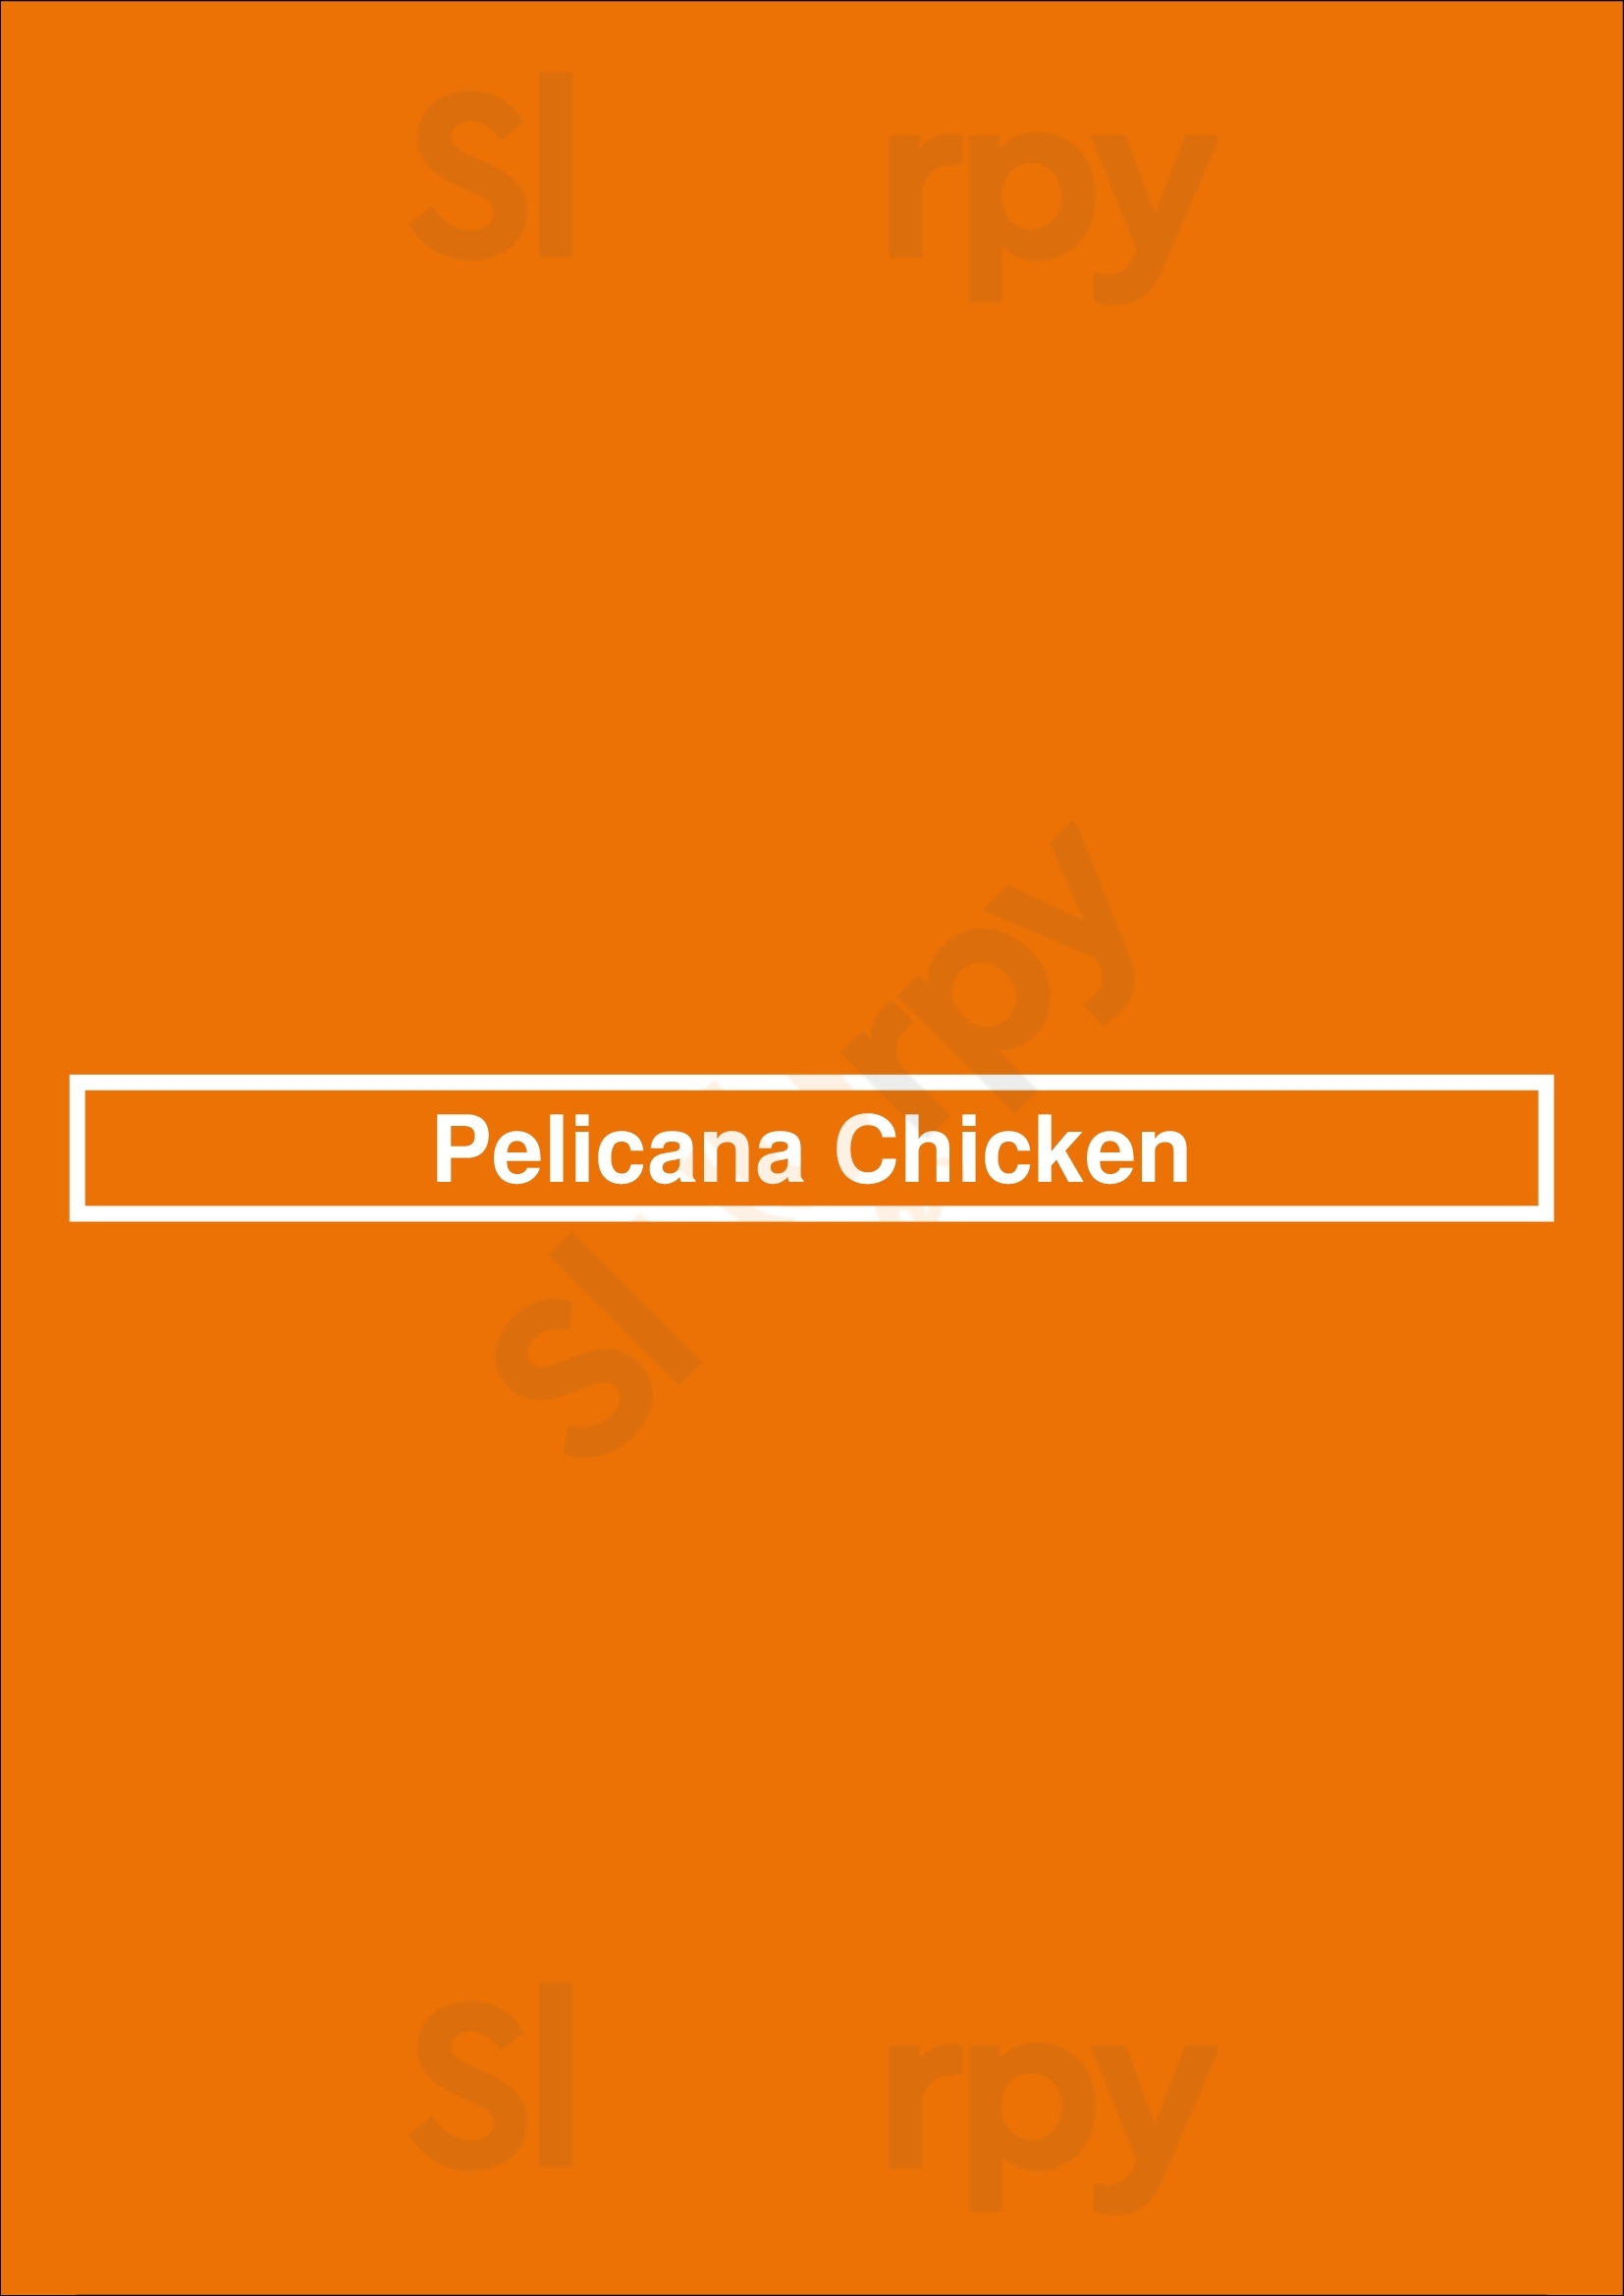 Pelicana Chicken Bayside Menu - 1